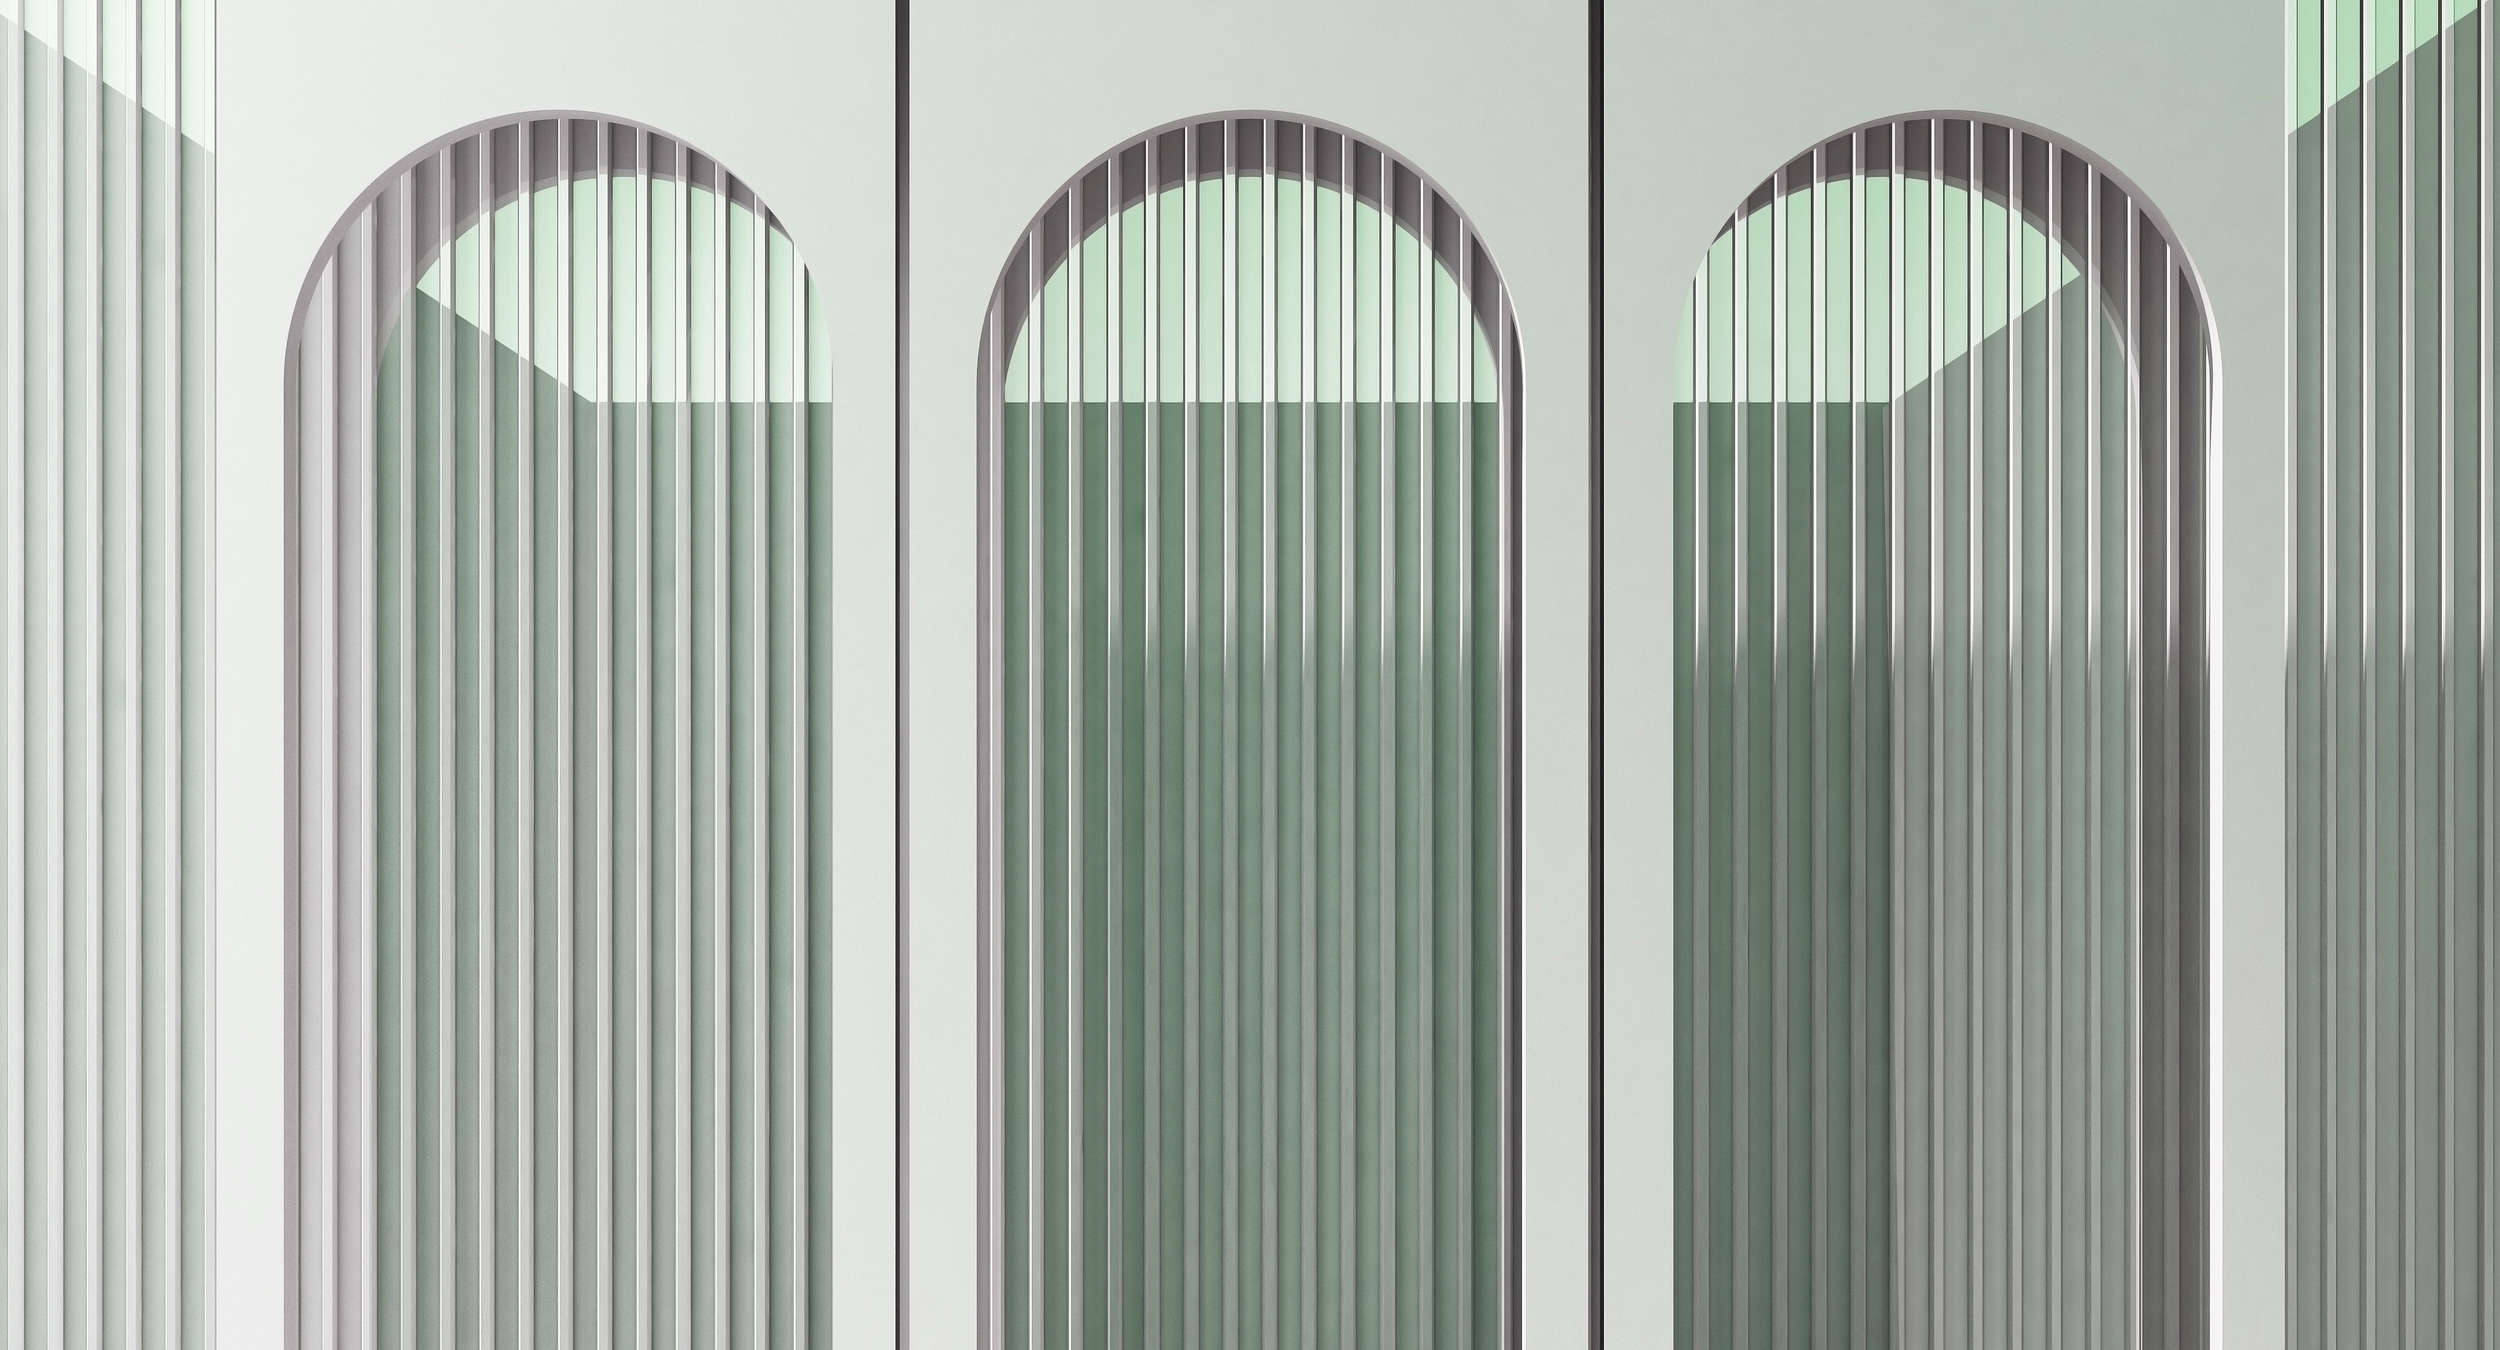             Escape Room 3 - Carta da parati architettonica moderna Outlook grigio e verde
        